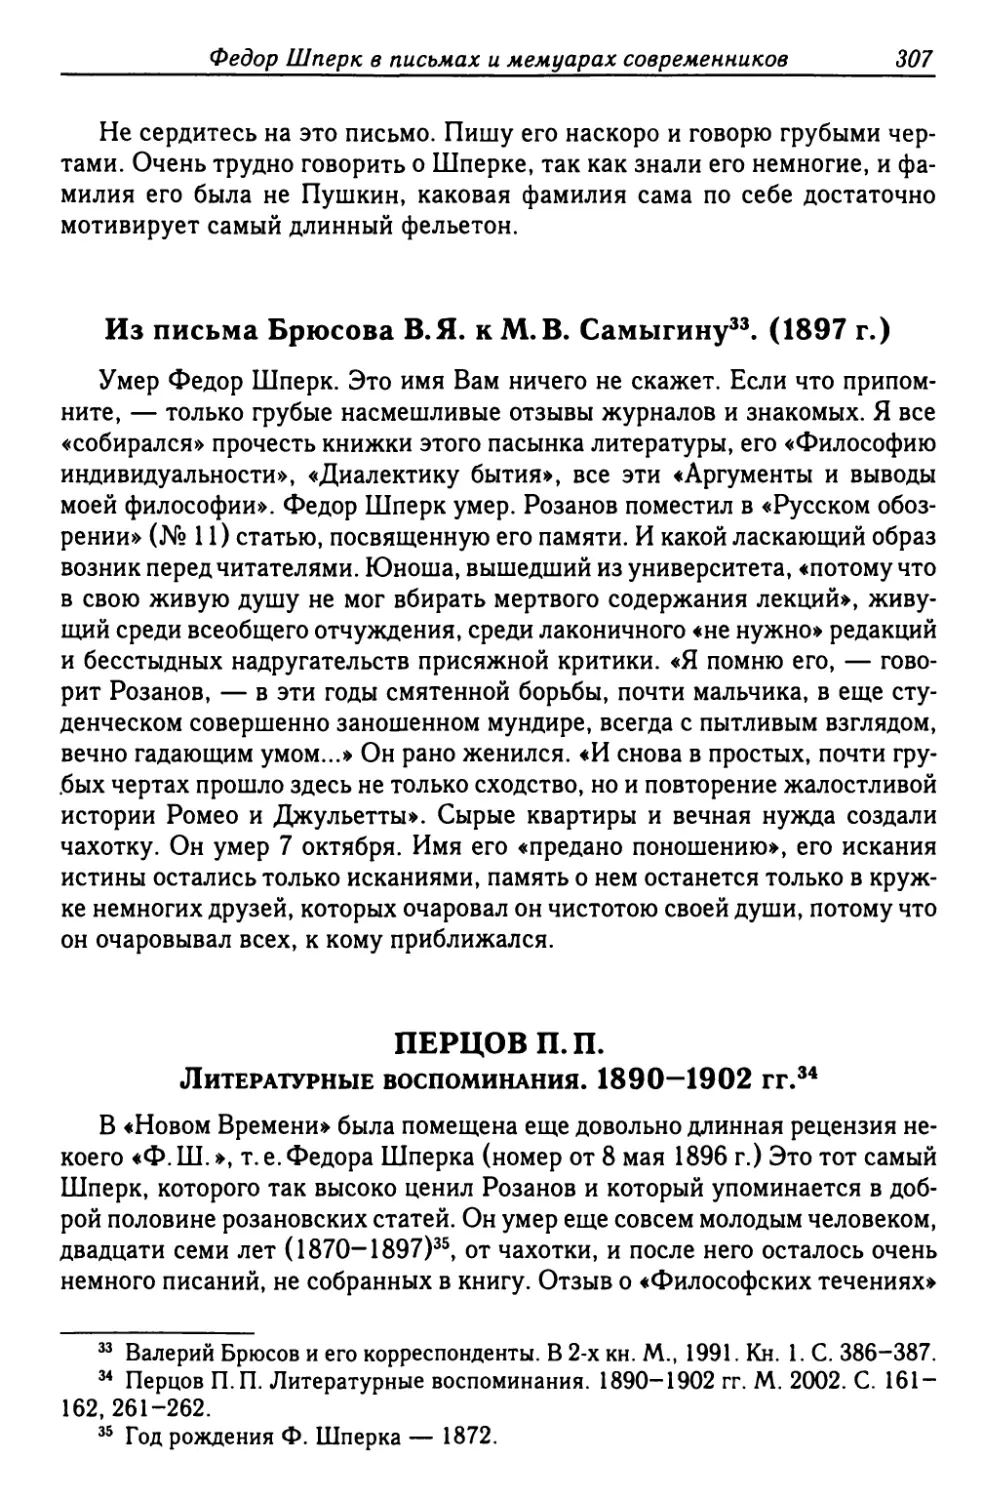 Перцов П.П. Литературные воспоминания. 1890-1902 гг